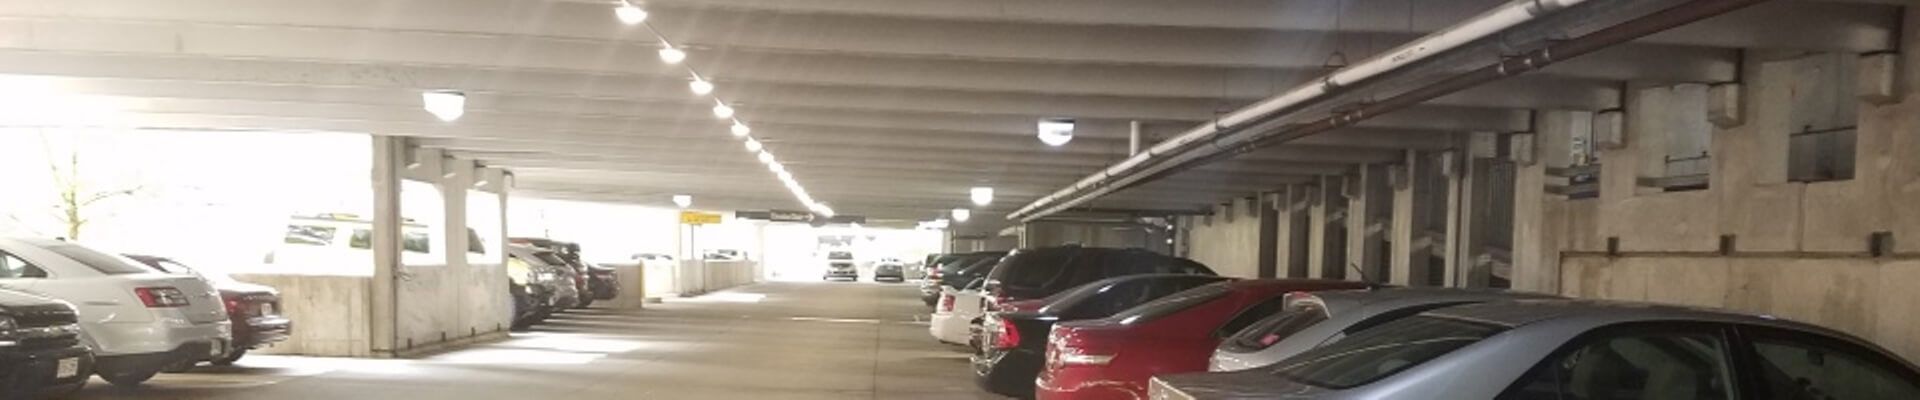 hilldale-parking-garage